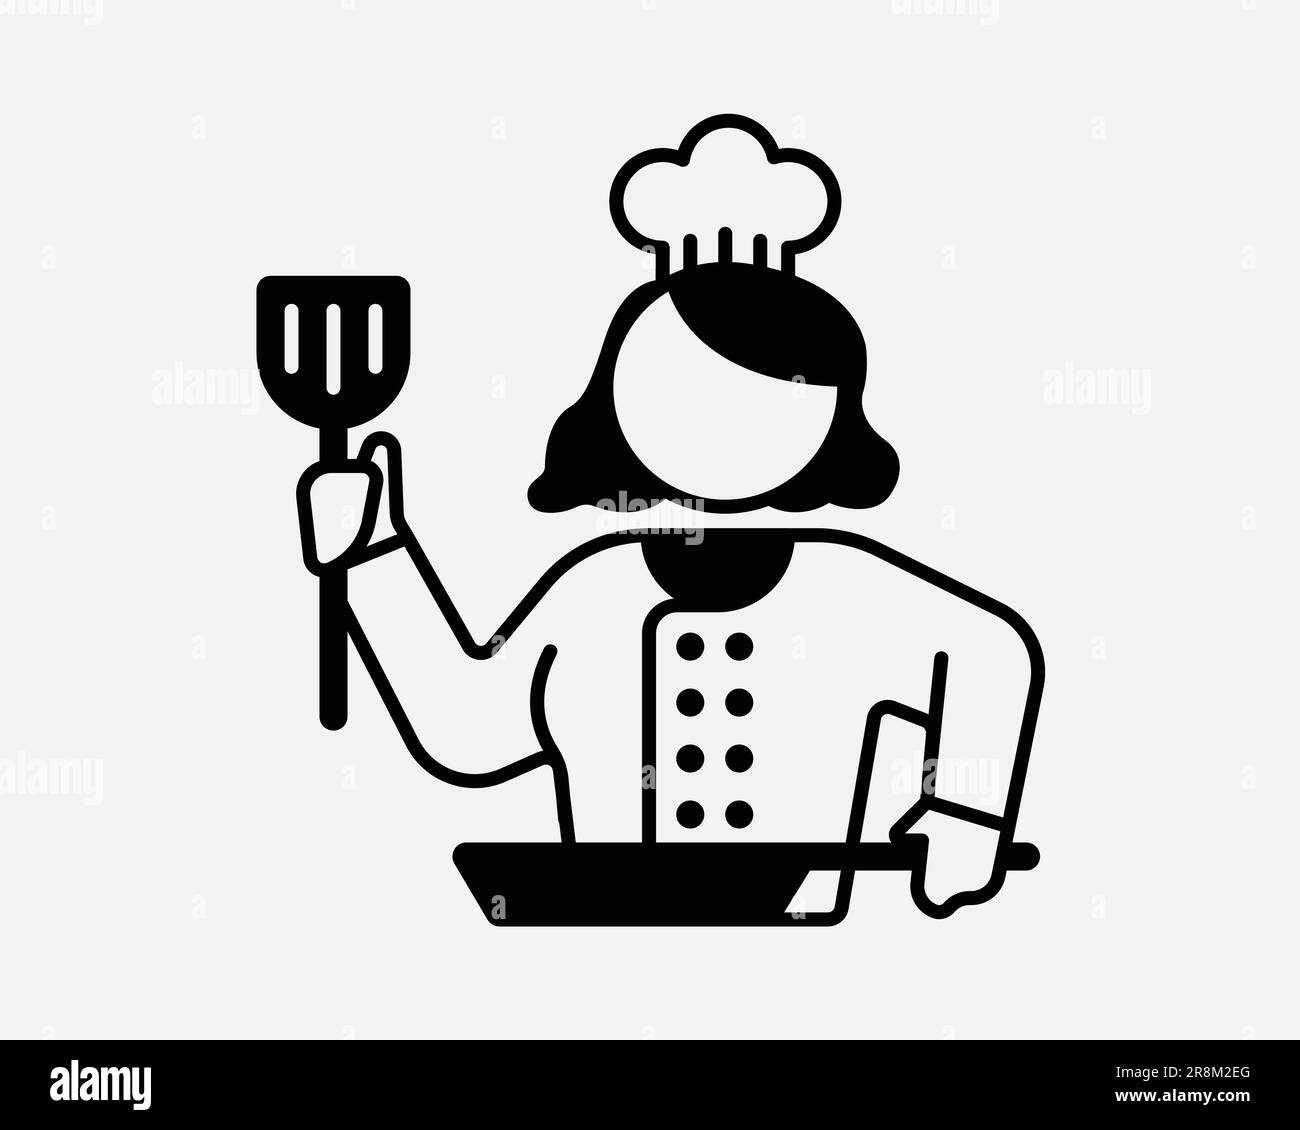 Icône Chef féminin. Lady Woman Girl Cook Kitchen Cartoon Character Restaurant. Signe blanc noir symbole Illustration graphique Clipart EPS Vector Illustration de Vecteur